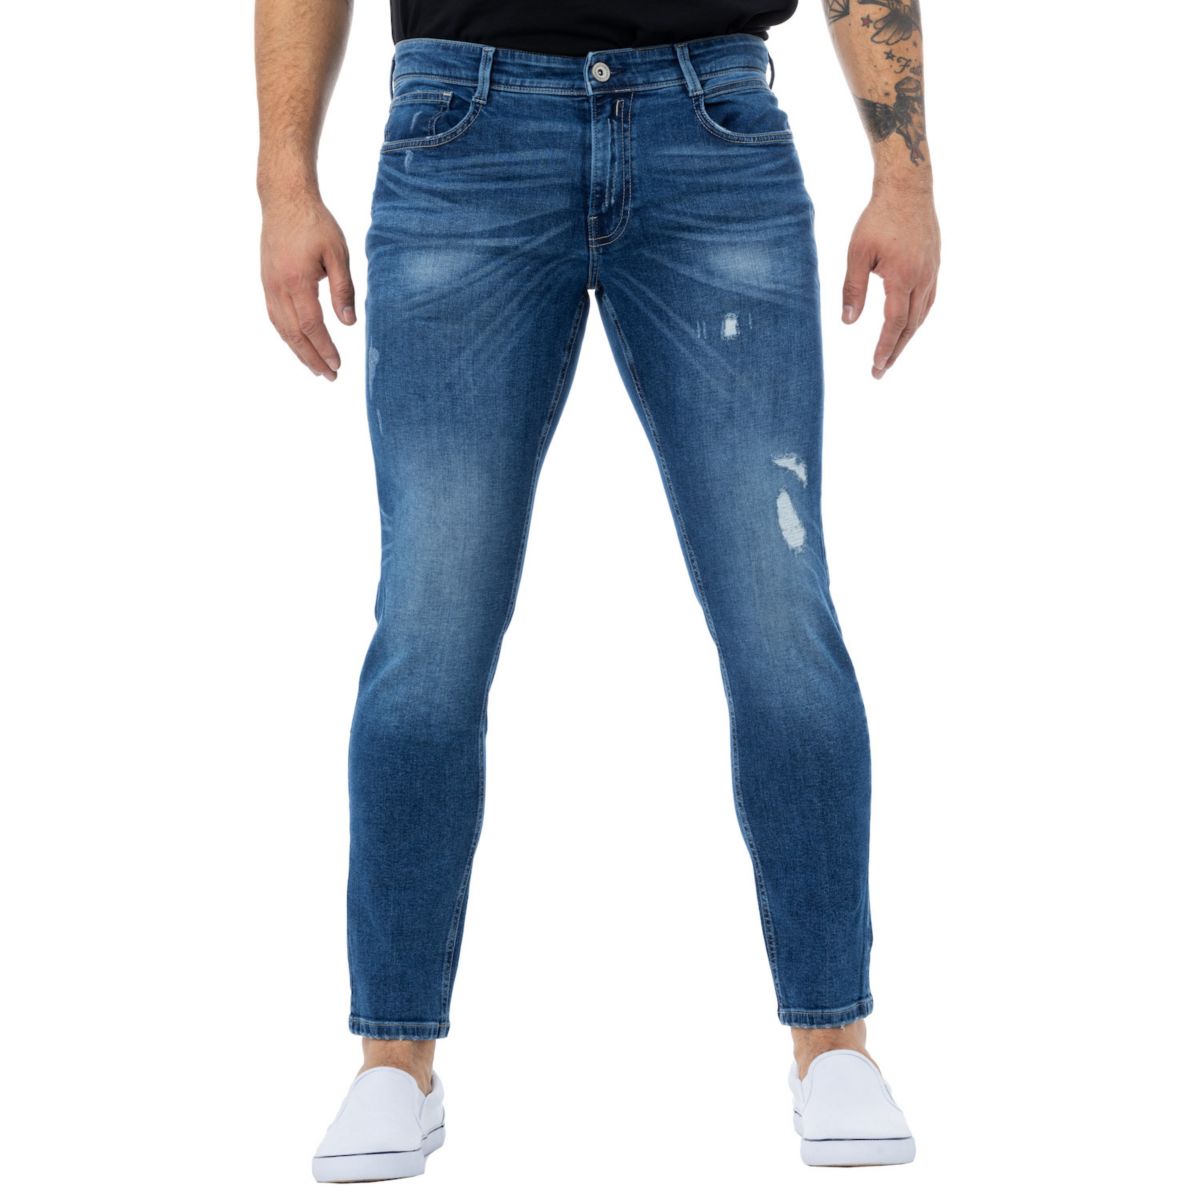 Men's Stretch 5 Pocket Skinny Jeans RawX